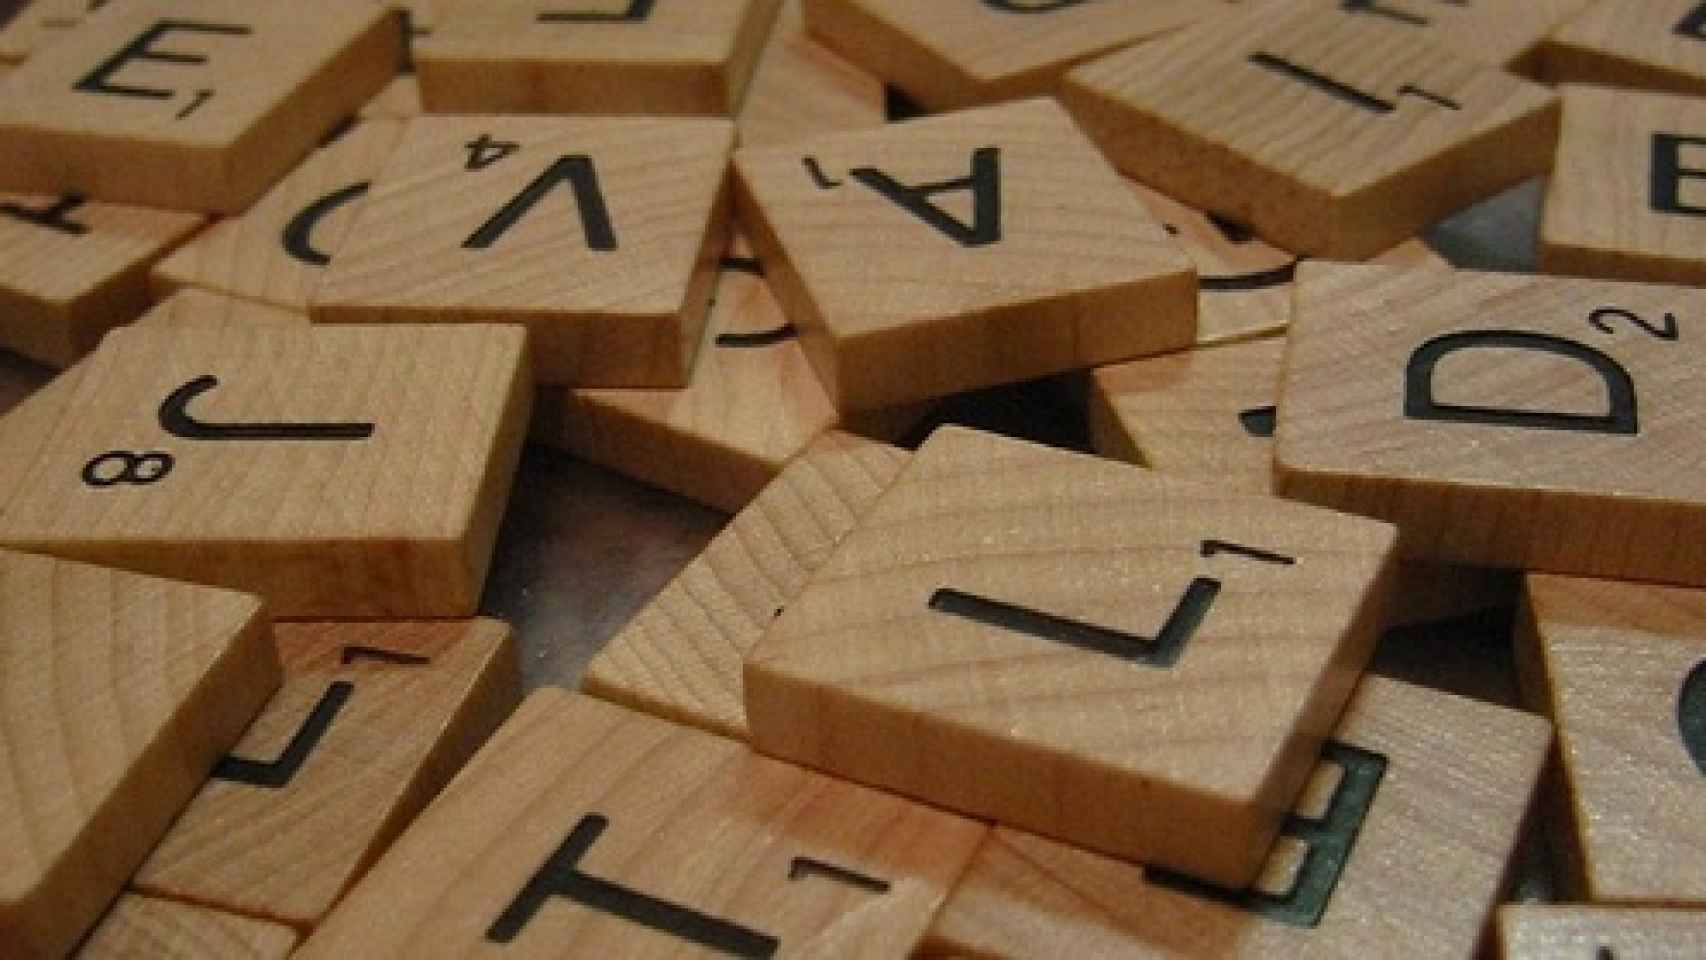 Fichas de un juego de mesa con distintas letras.